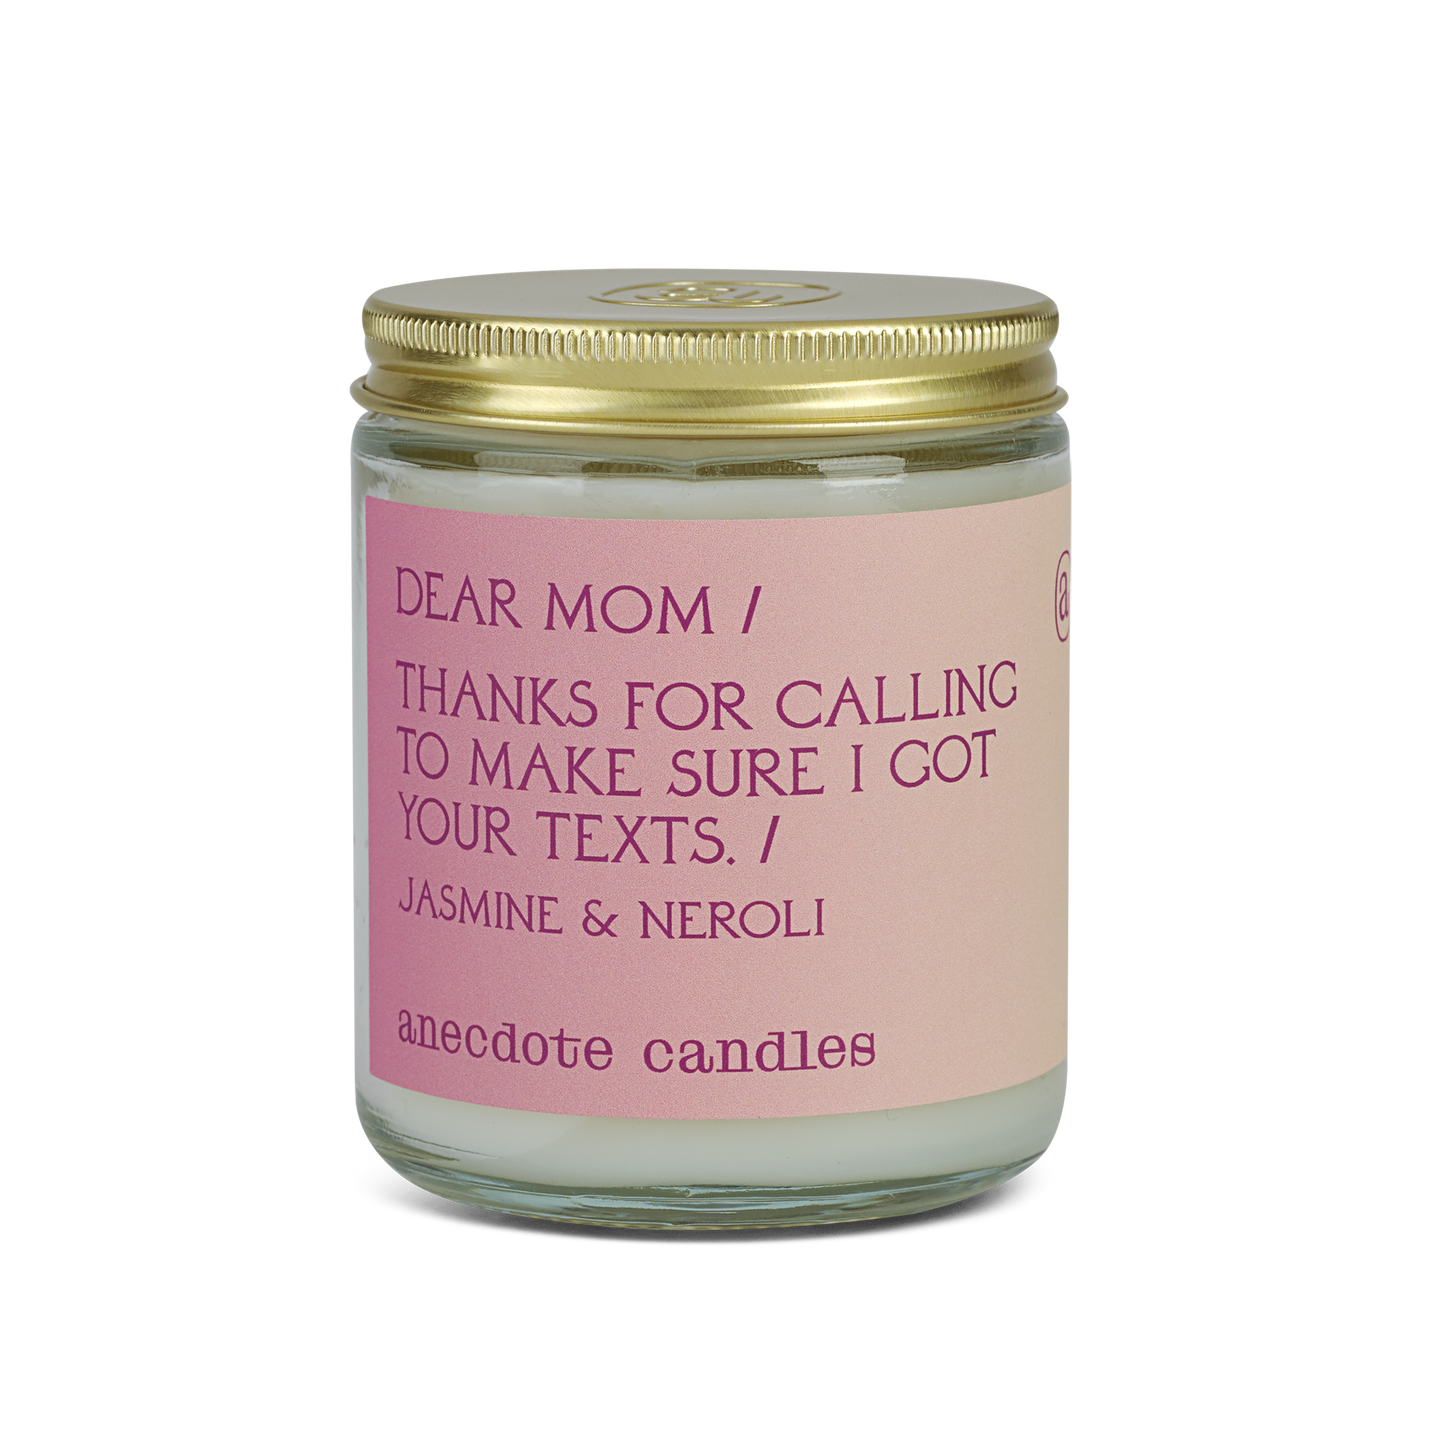 Dear Mom (Jasmine & Neroli) Glass Jar Candle